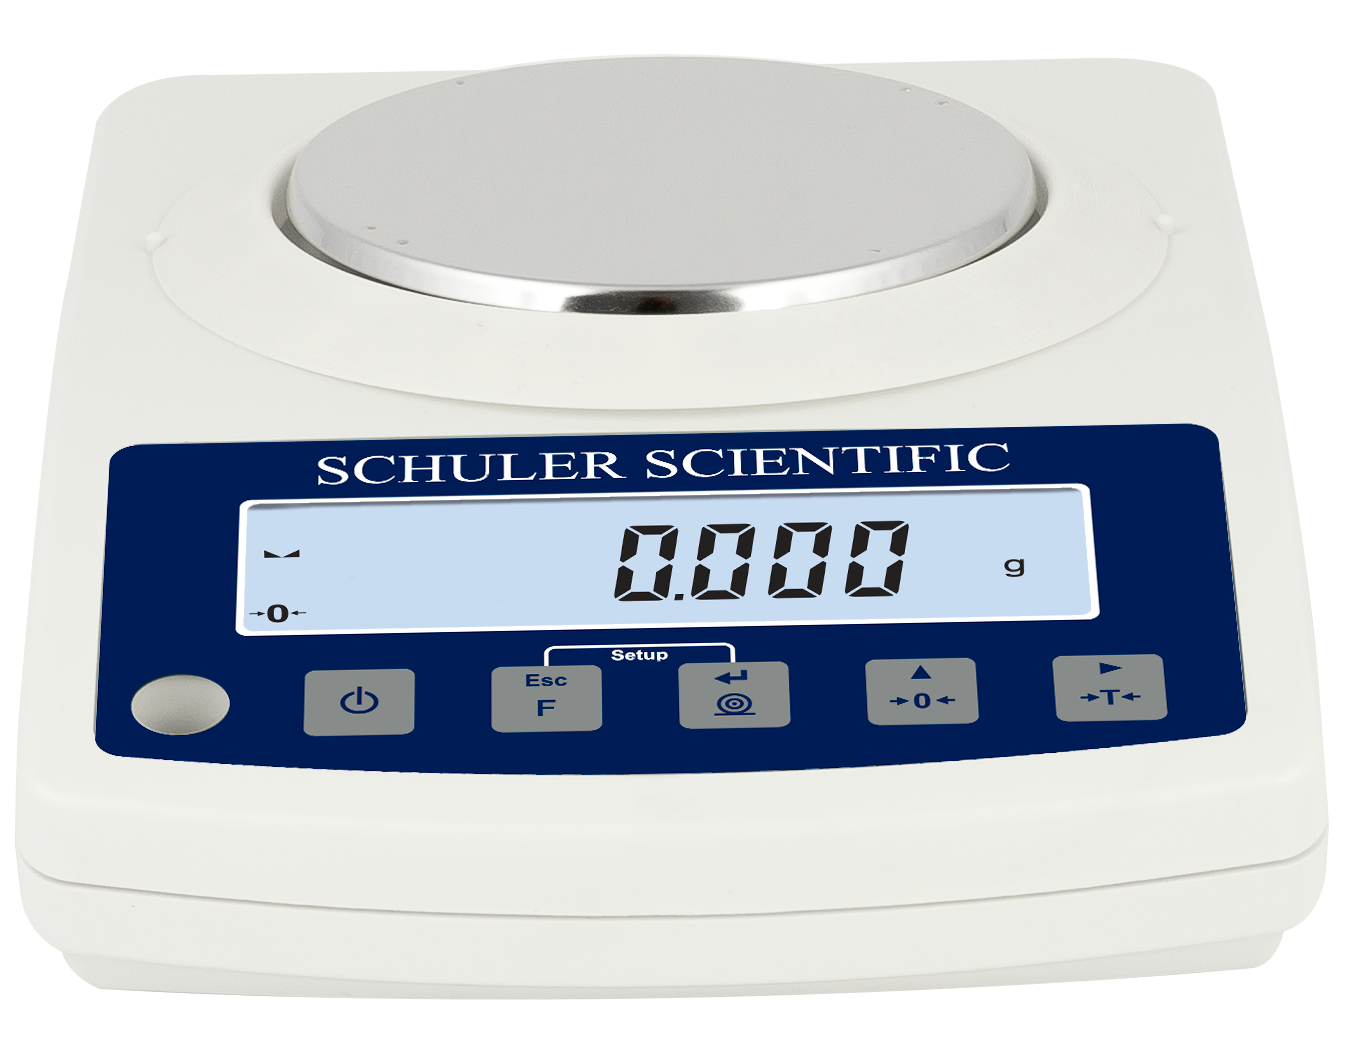 Schuler Scientific SH-Series Scale 6001N 6000G - NTEP Certified